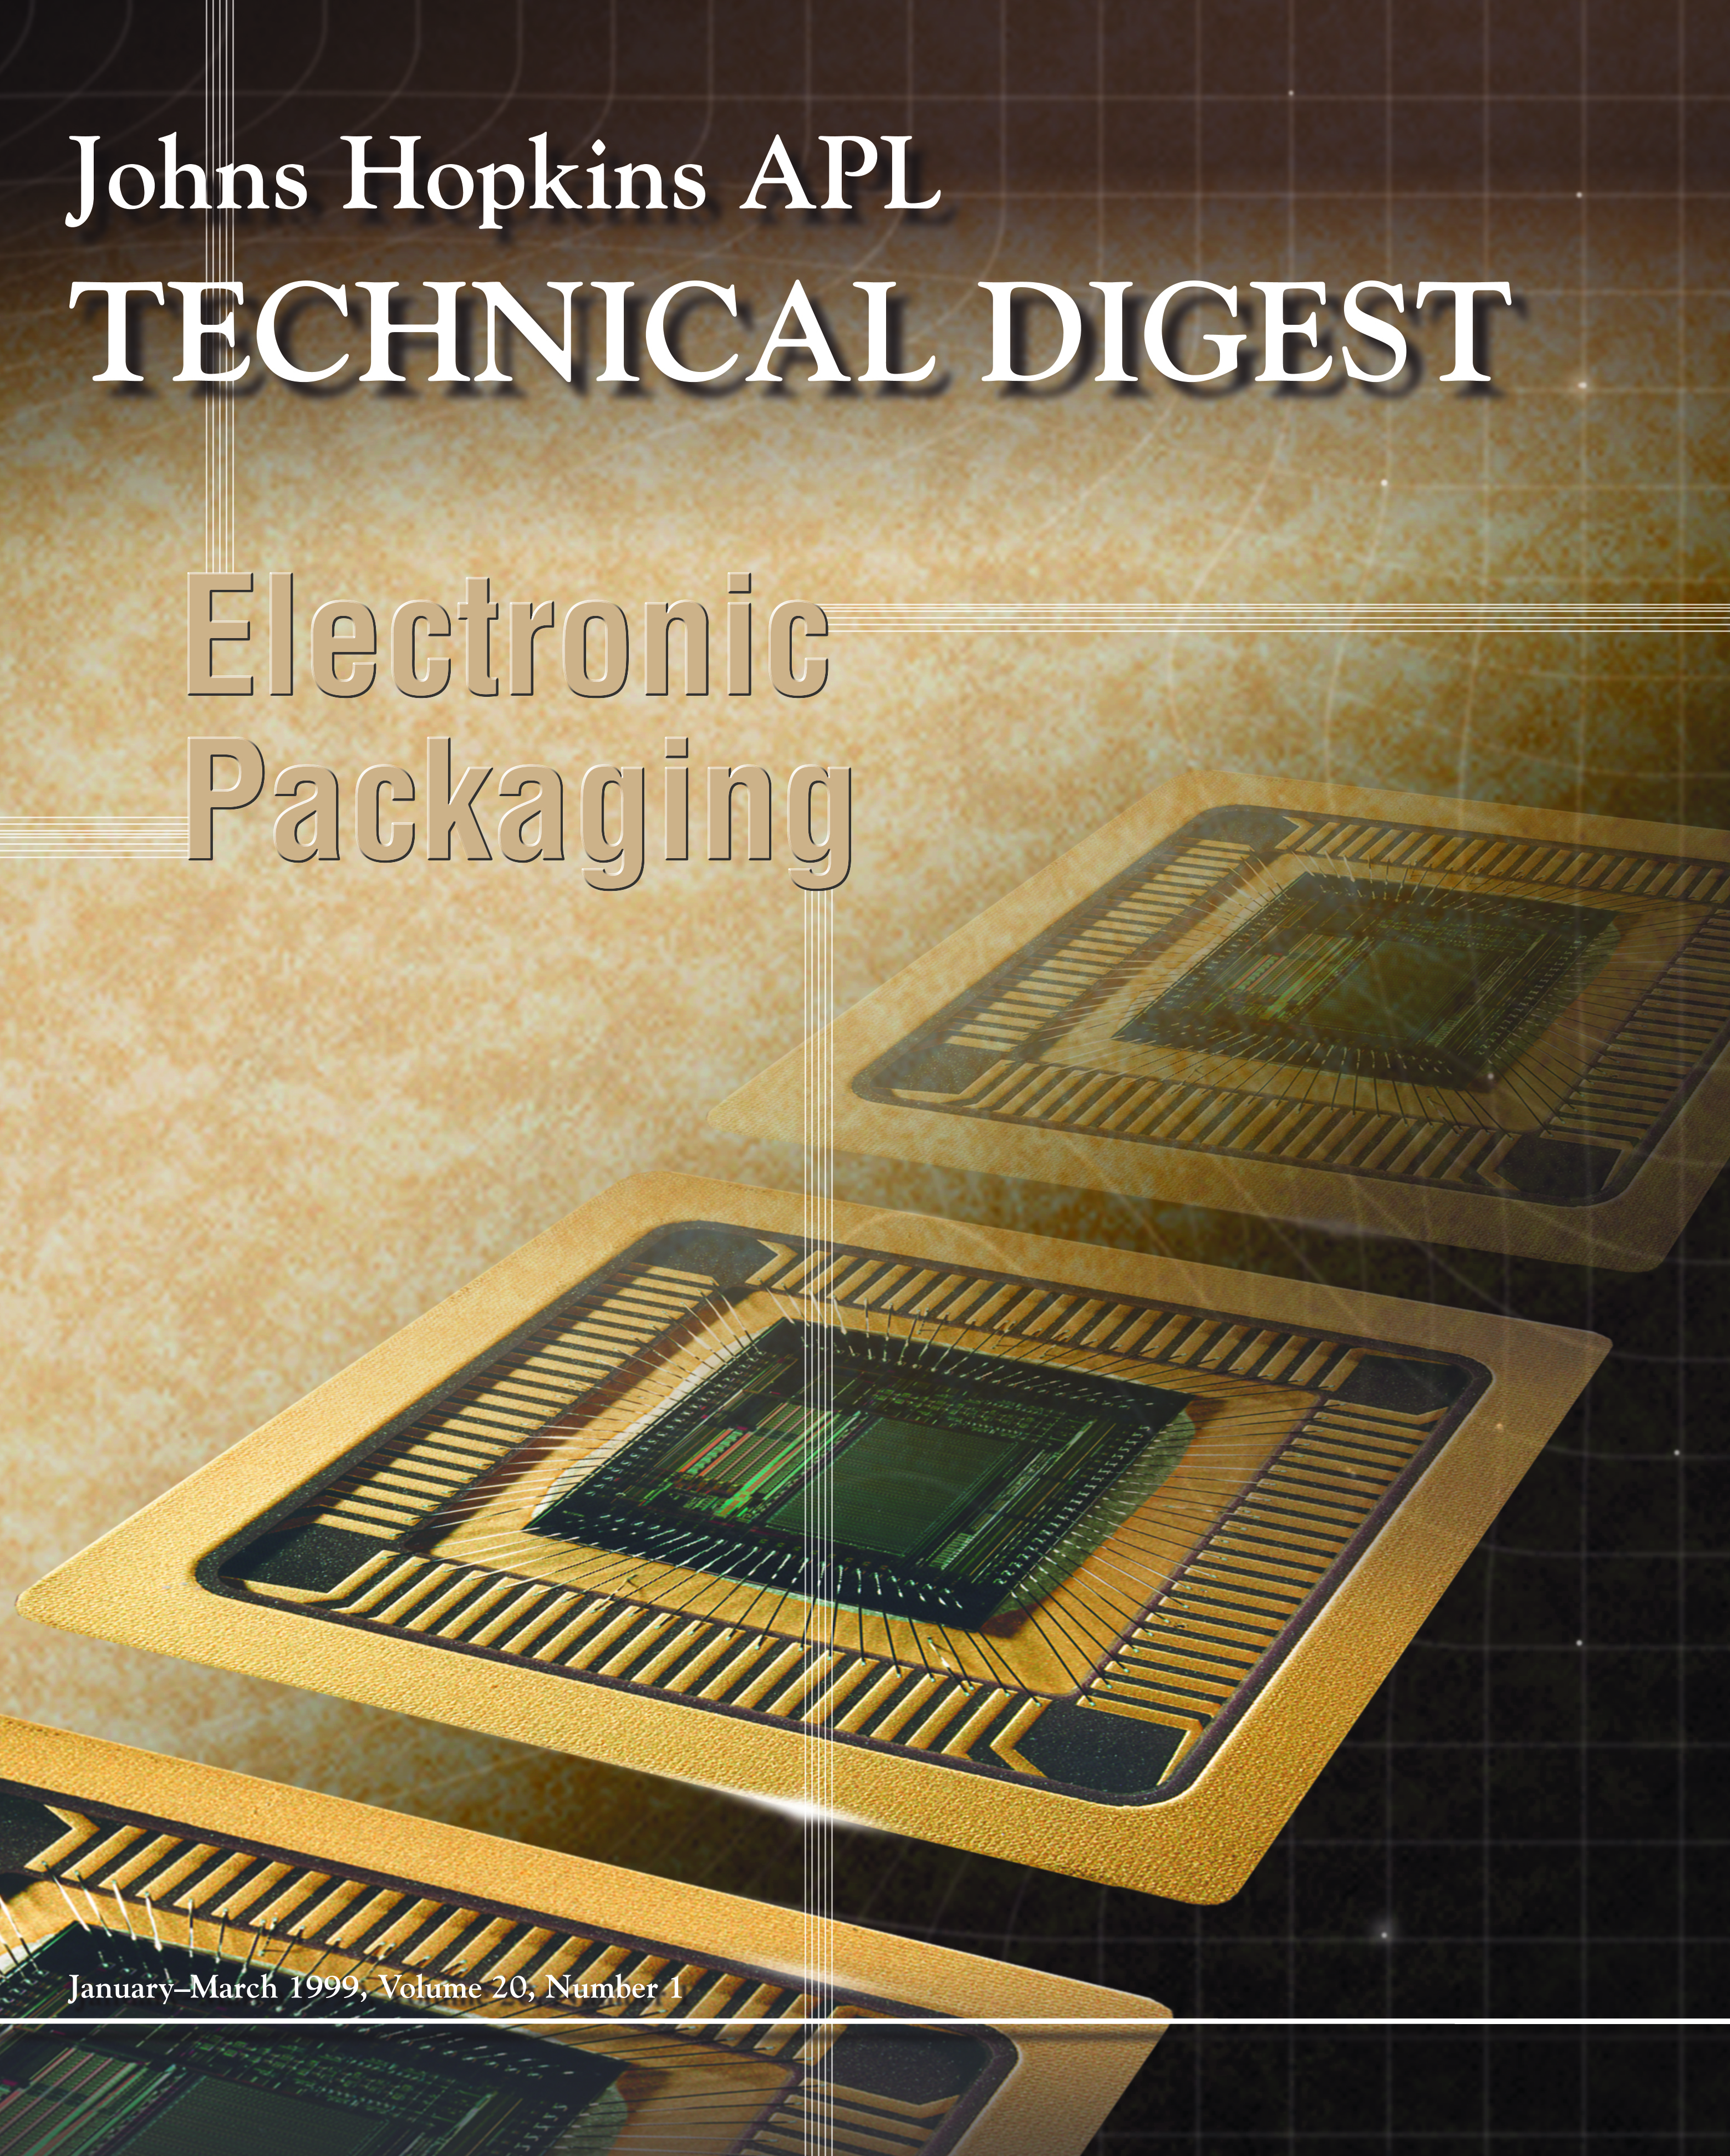 Tech Digest Vol.20 Num.1 Cover